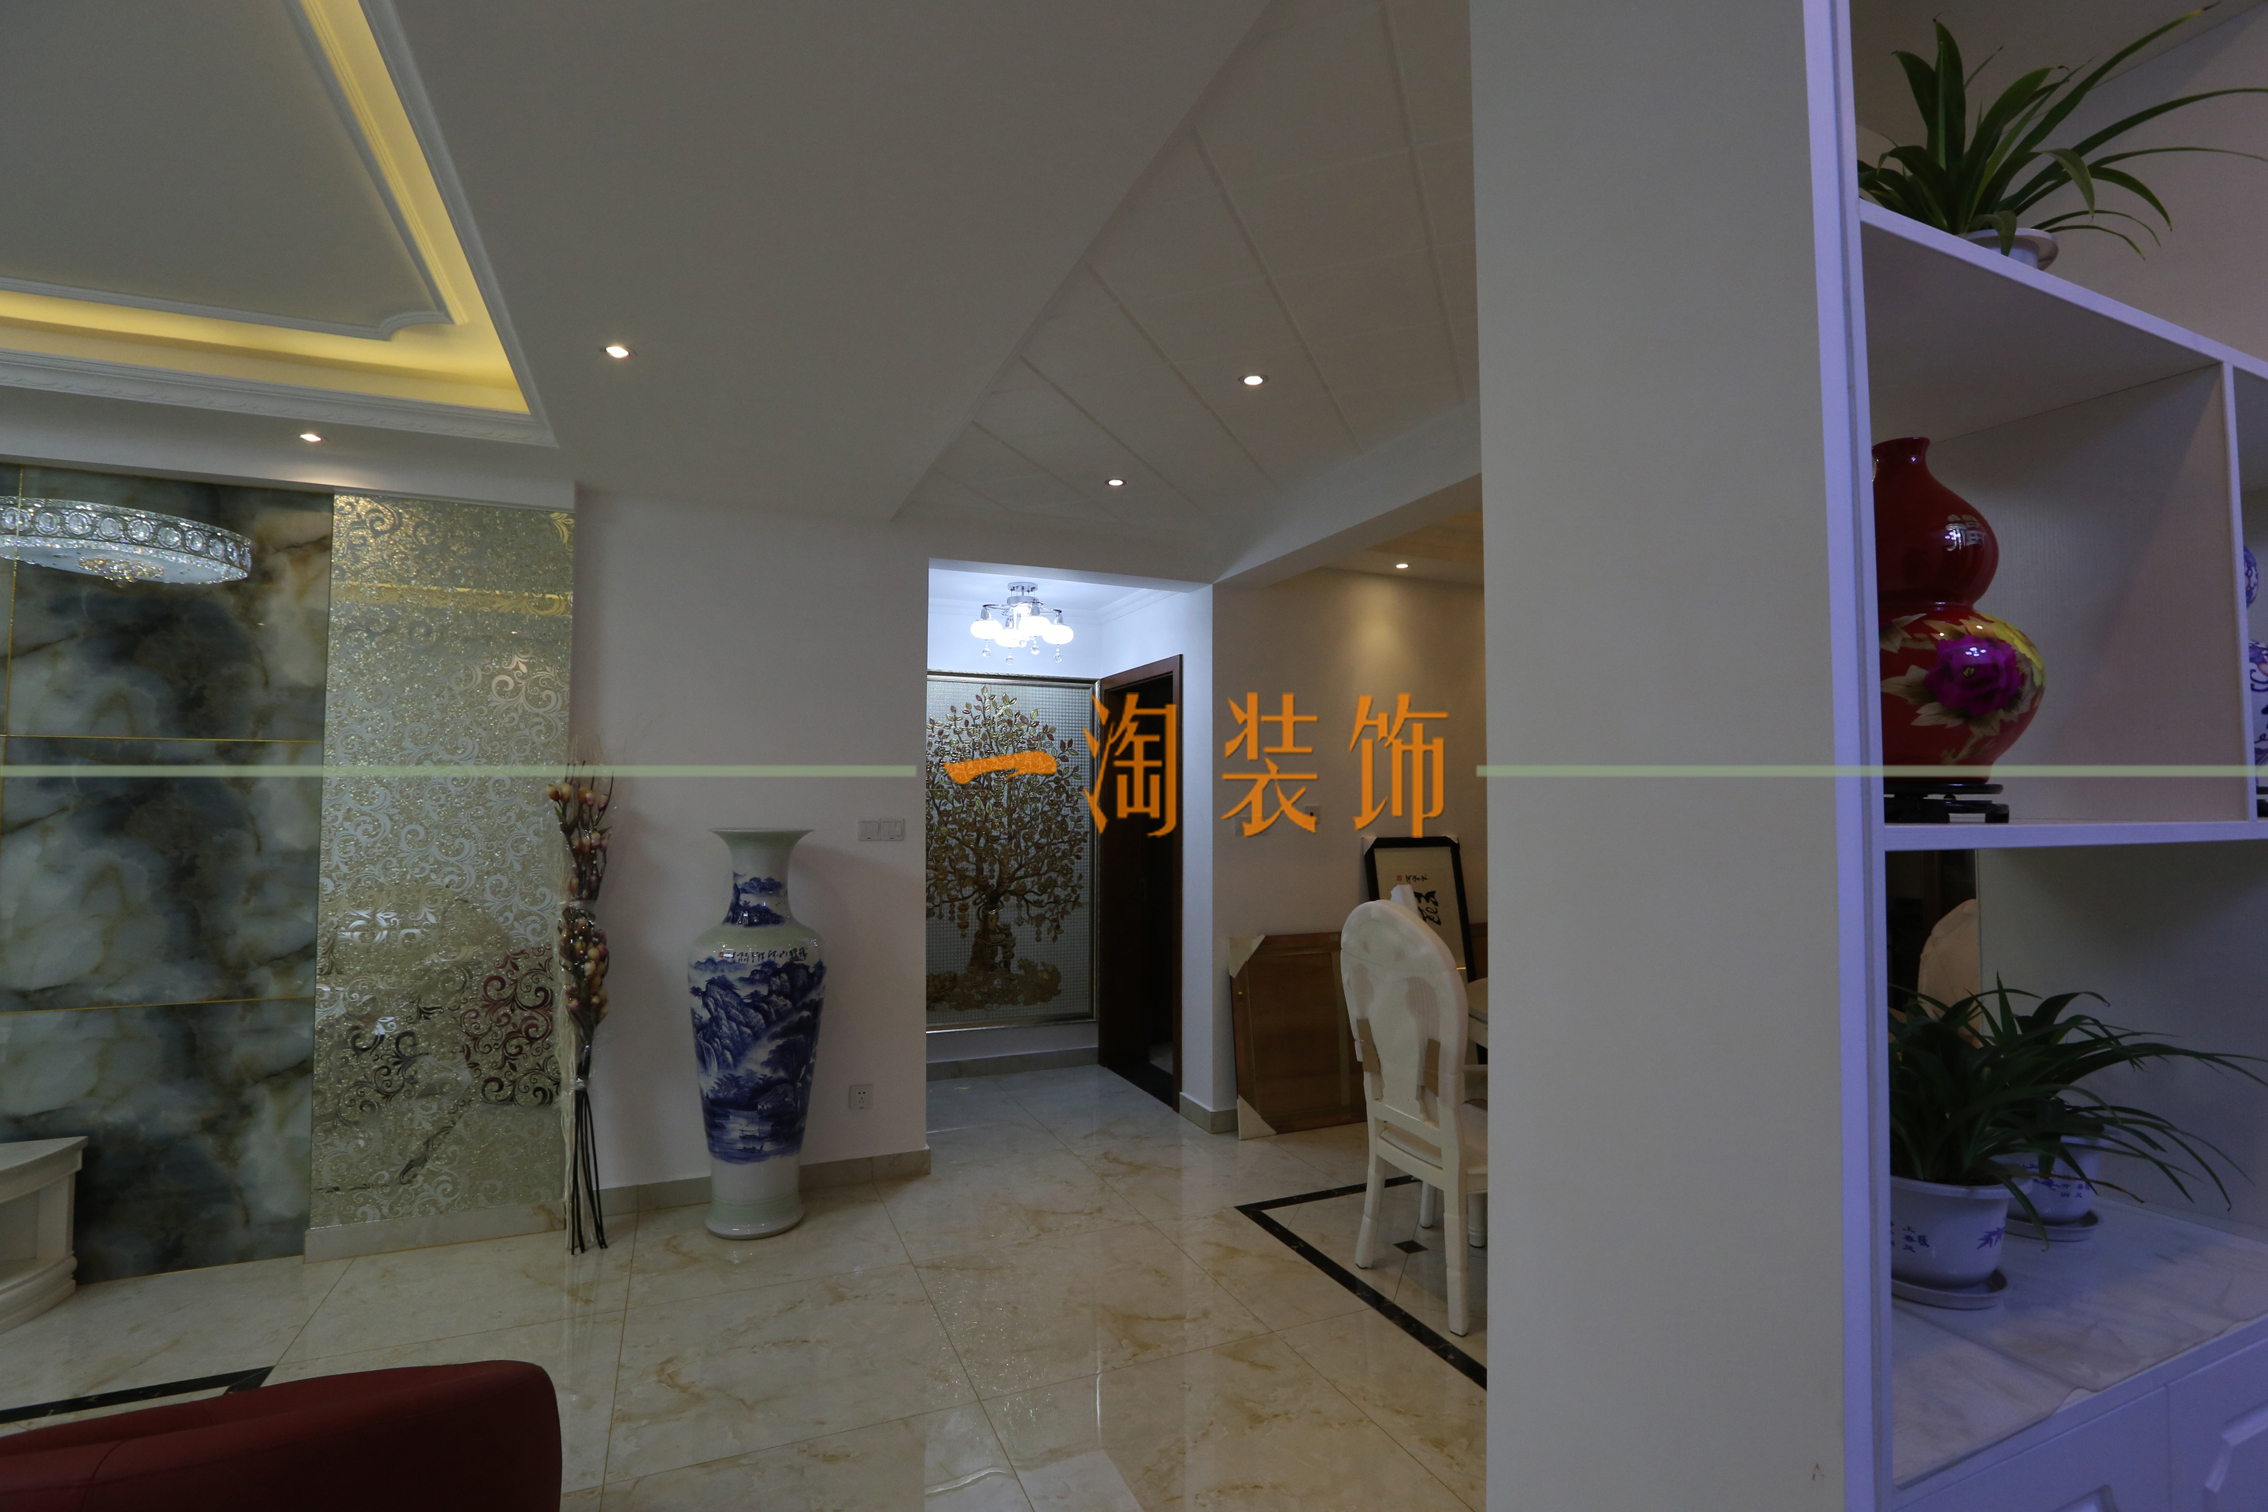 欧式 简约 客厅图片来自苏州一淘装饰在现代欧式梧桐公馆的分享